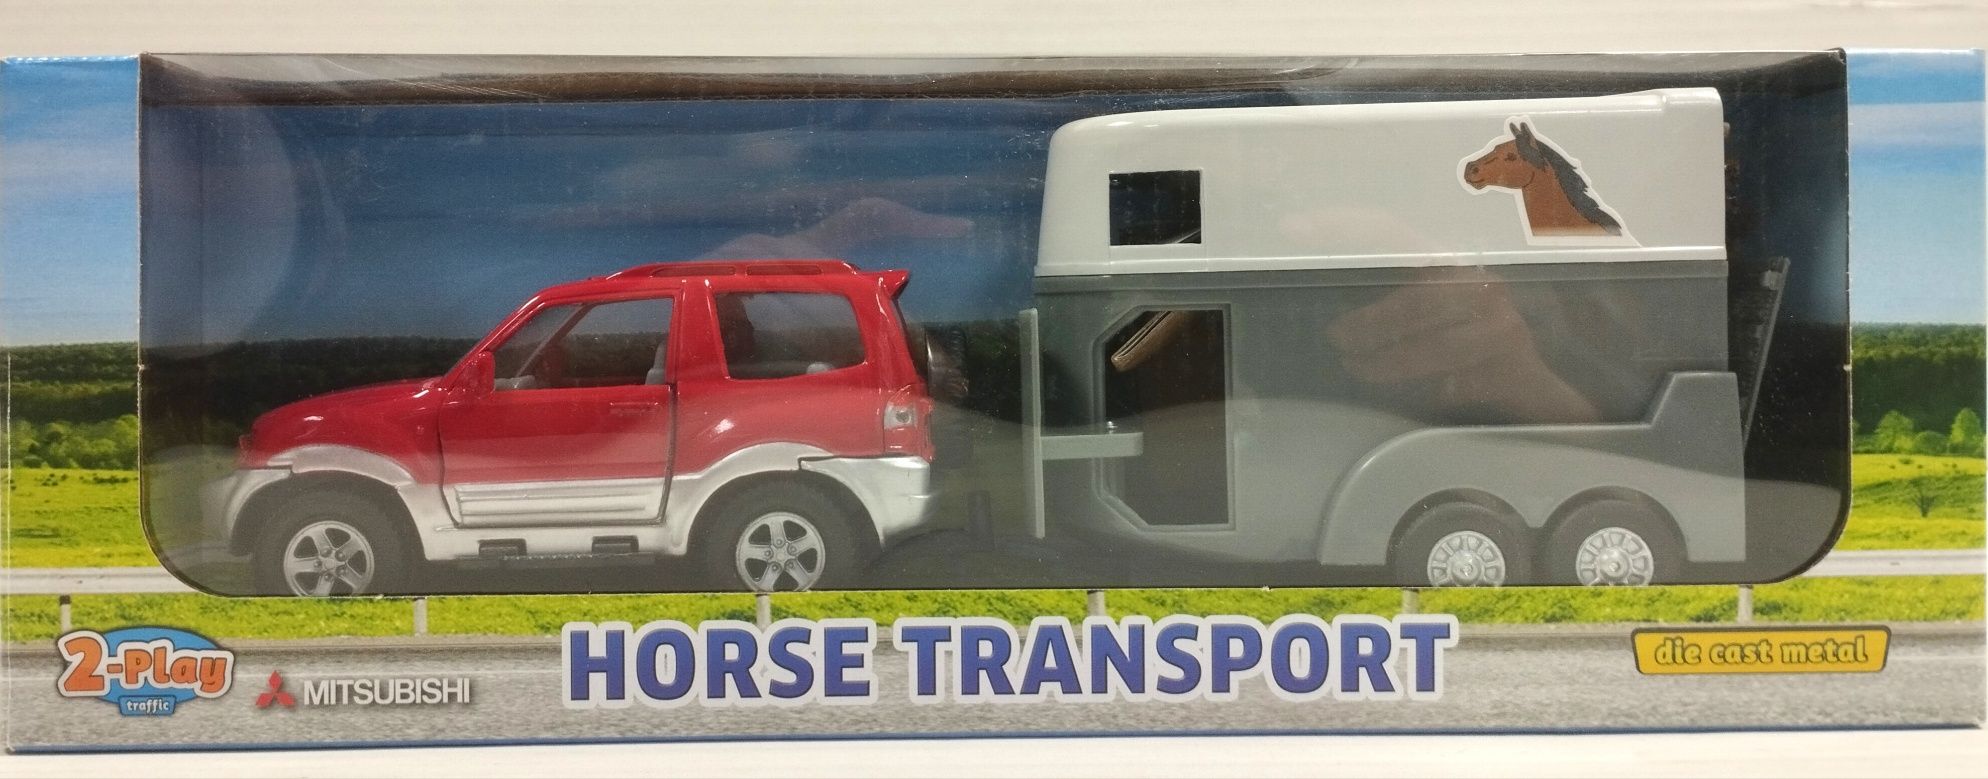 Auto autko z przyczepą do transportu koni